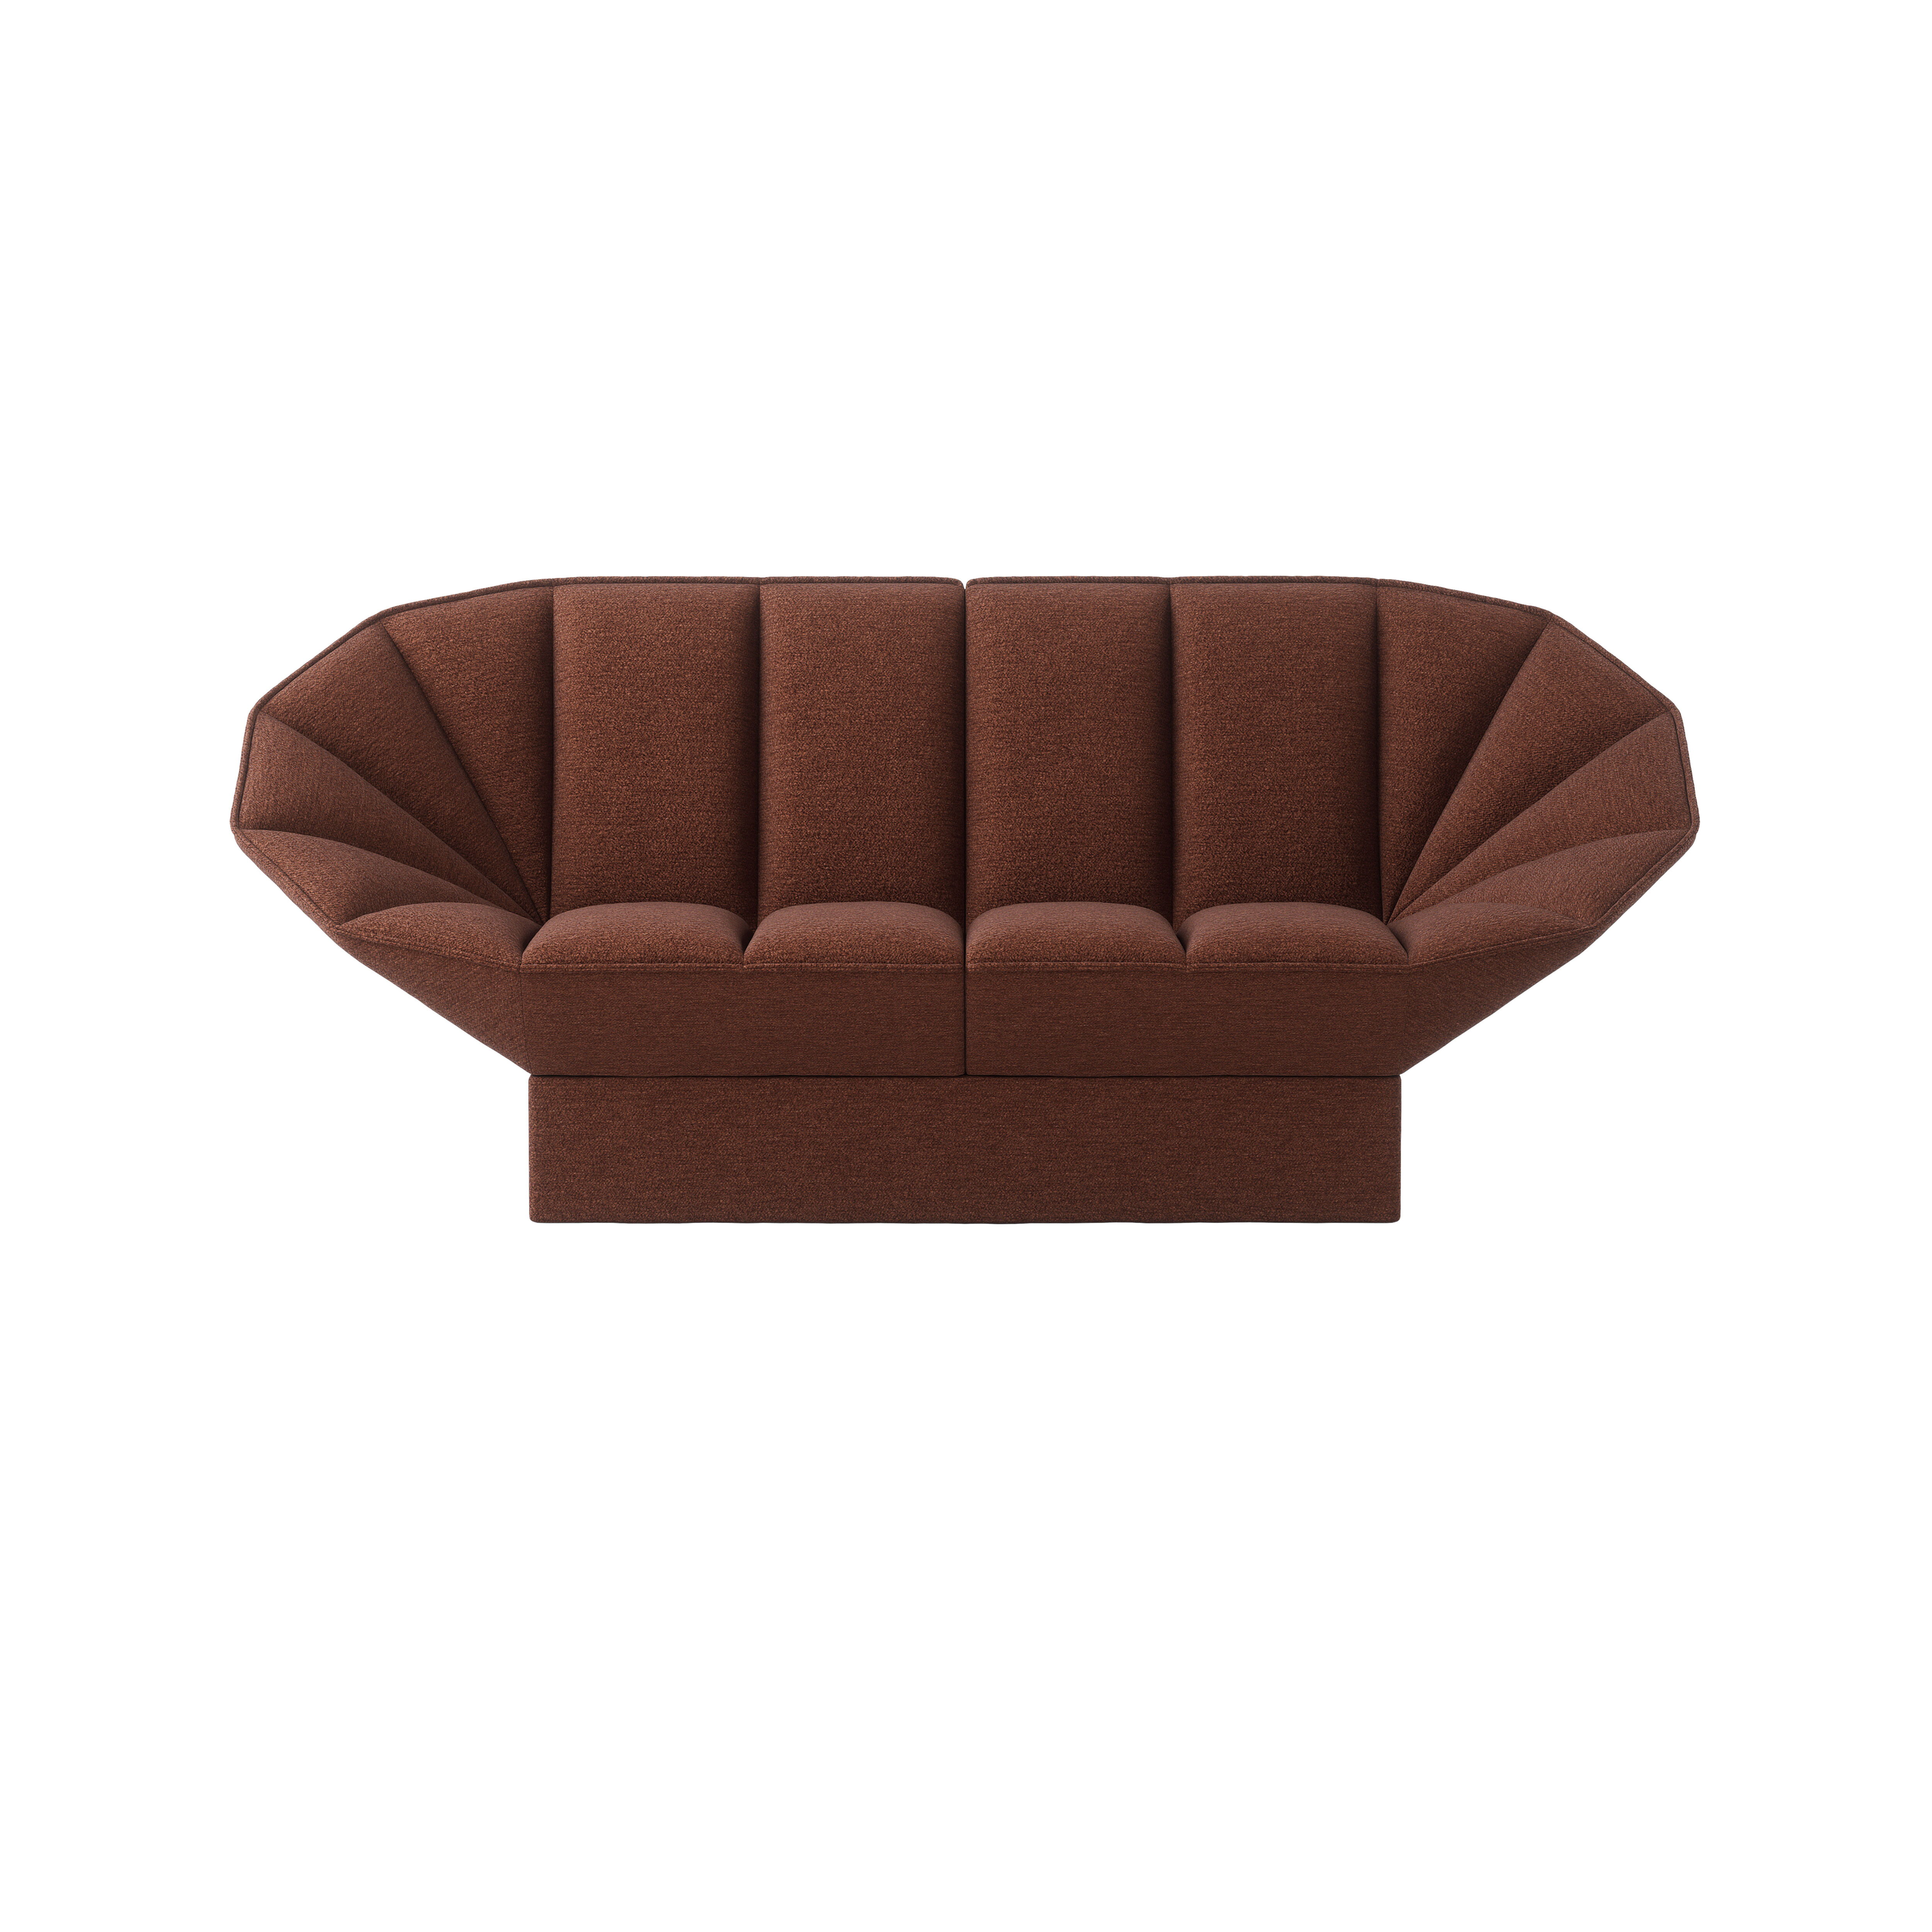 Ori 2- seater sofa product image 6